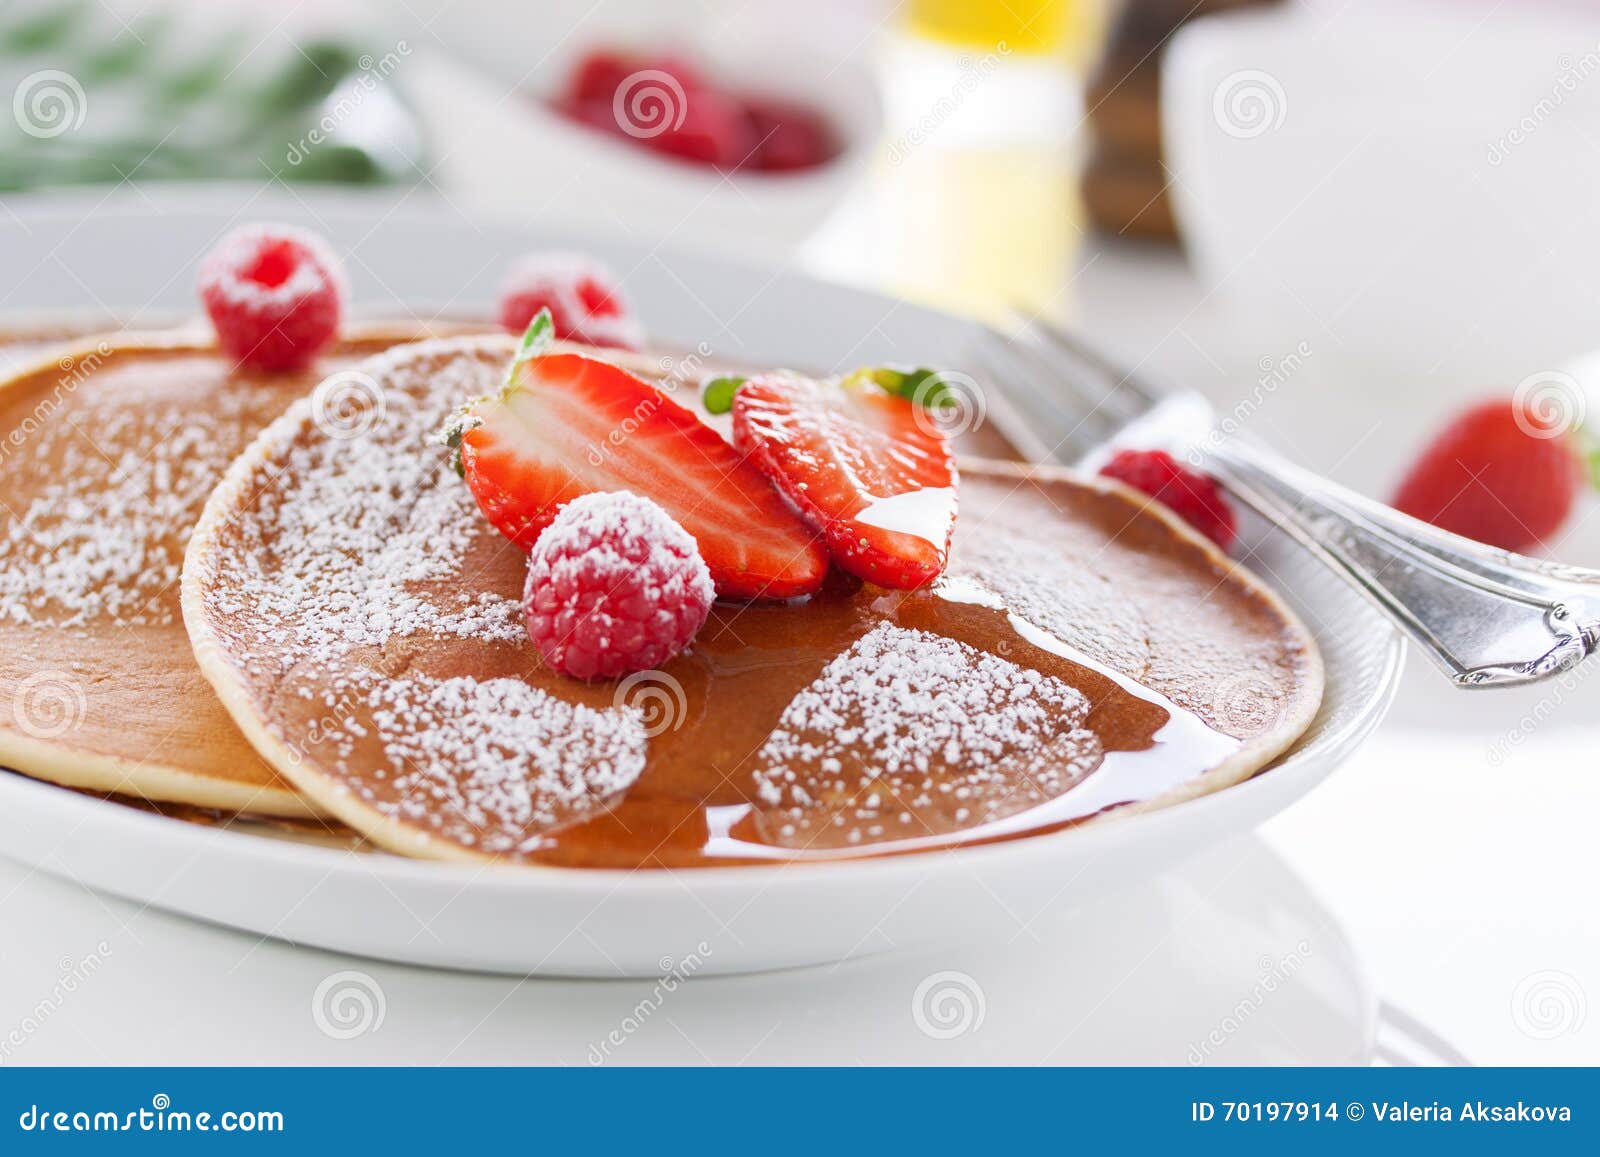 Domowej roboty maślanki amerykańscy bliny z świeżą truskawką i malinką na białym talerzu na białym stole dla śniadania, zbliżenie, selekcyjna ostrość